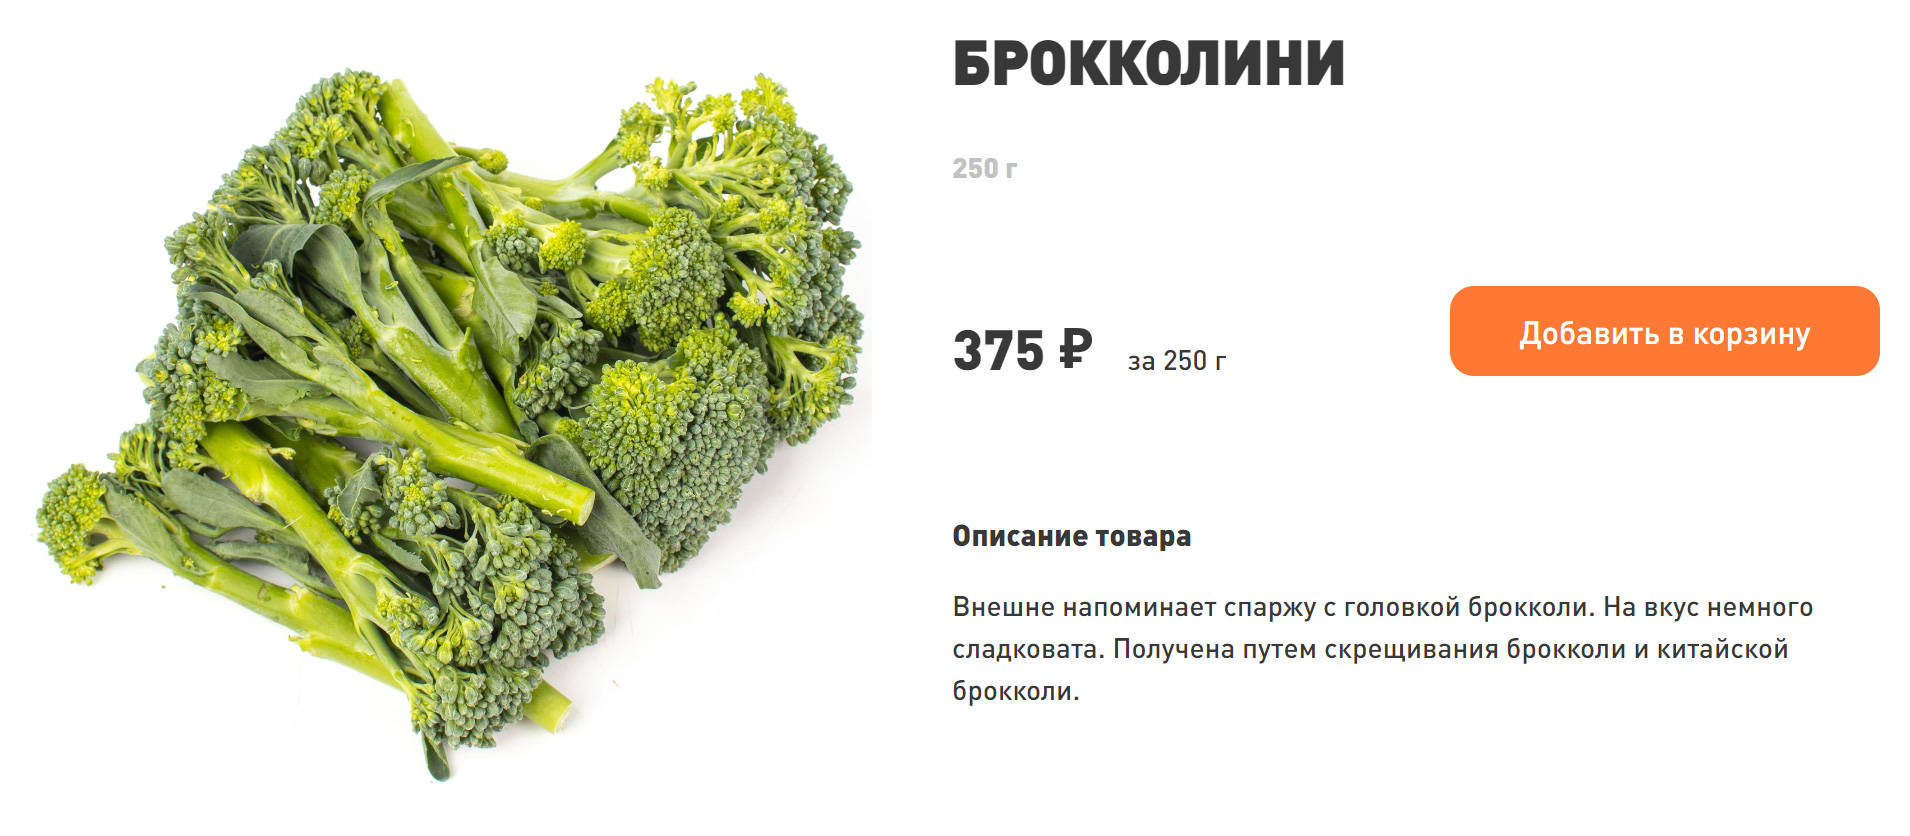 В апреле сезон брокколини еще не начался — сейчас овоща нет в магазинах. Источник: ecomarket.ru